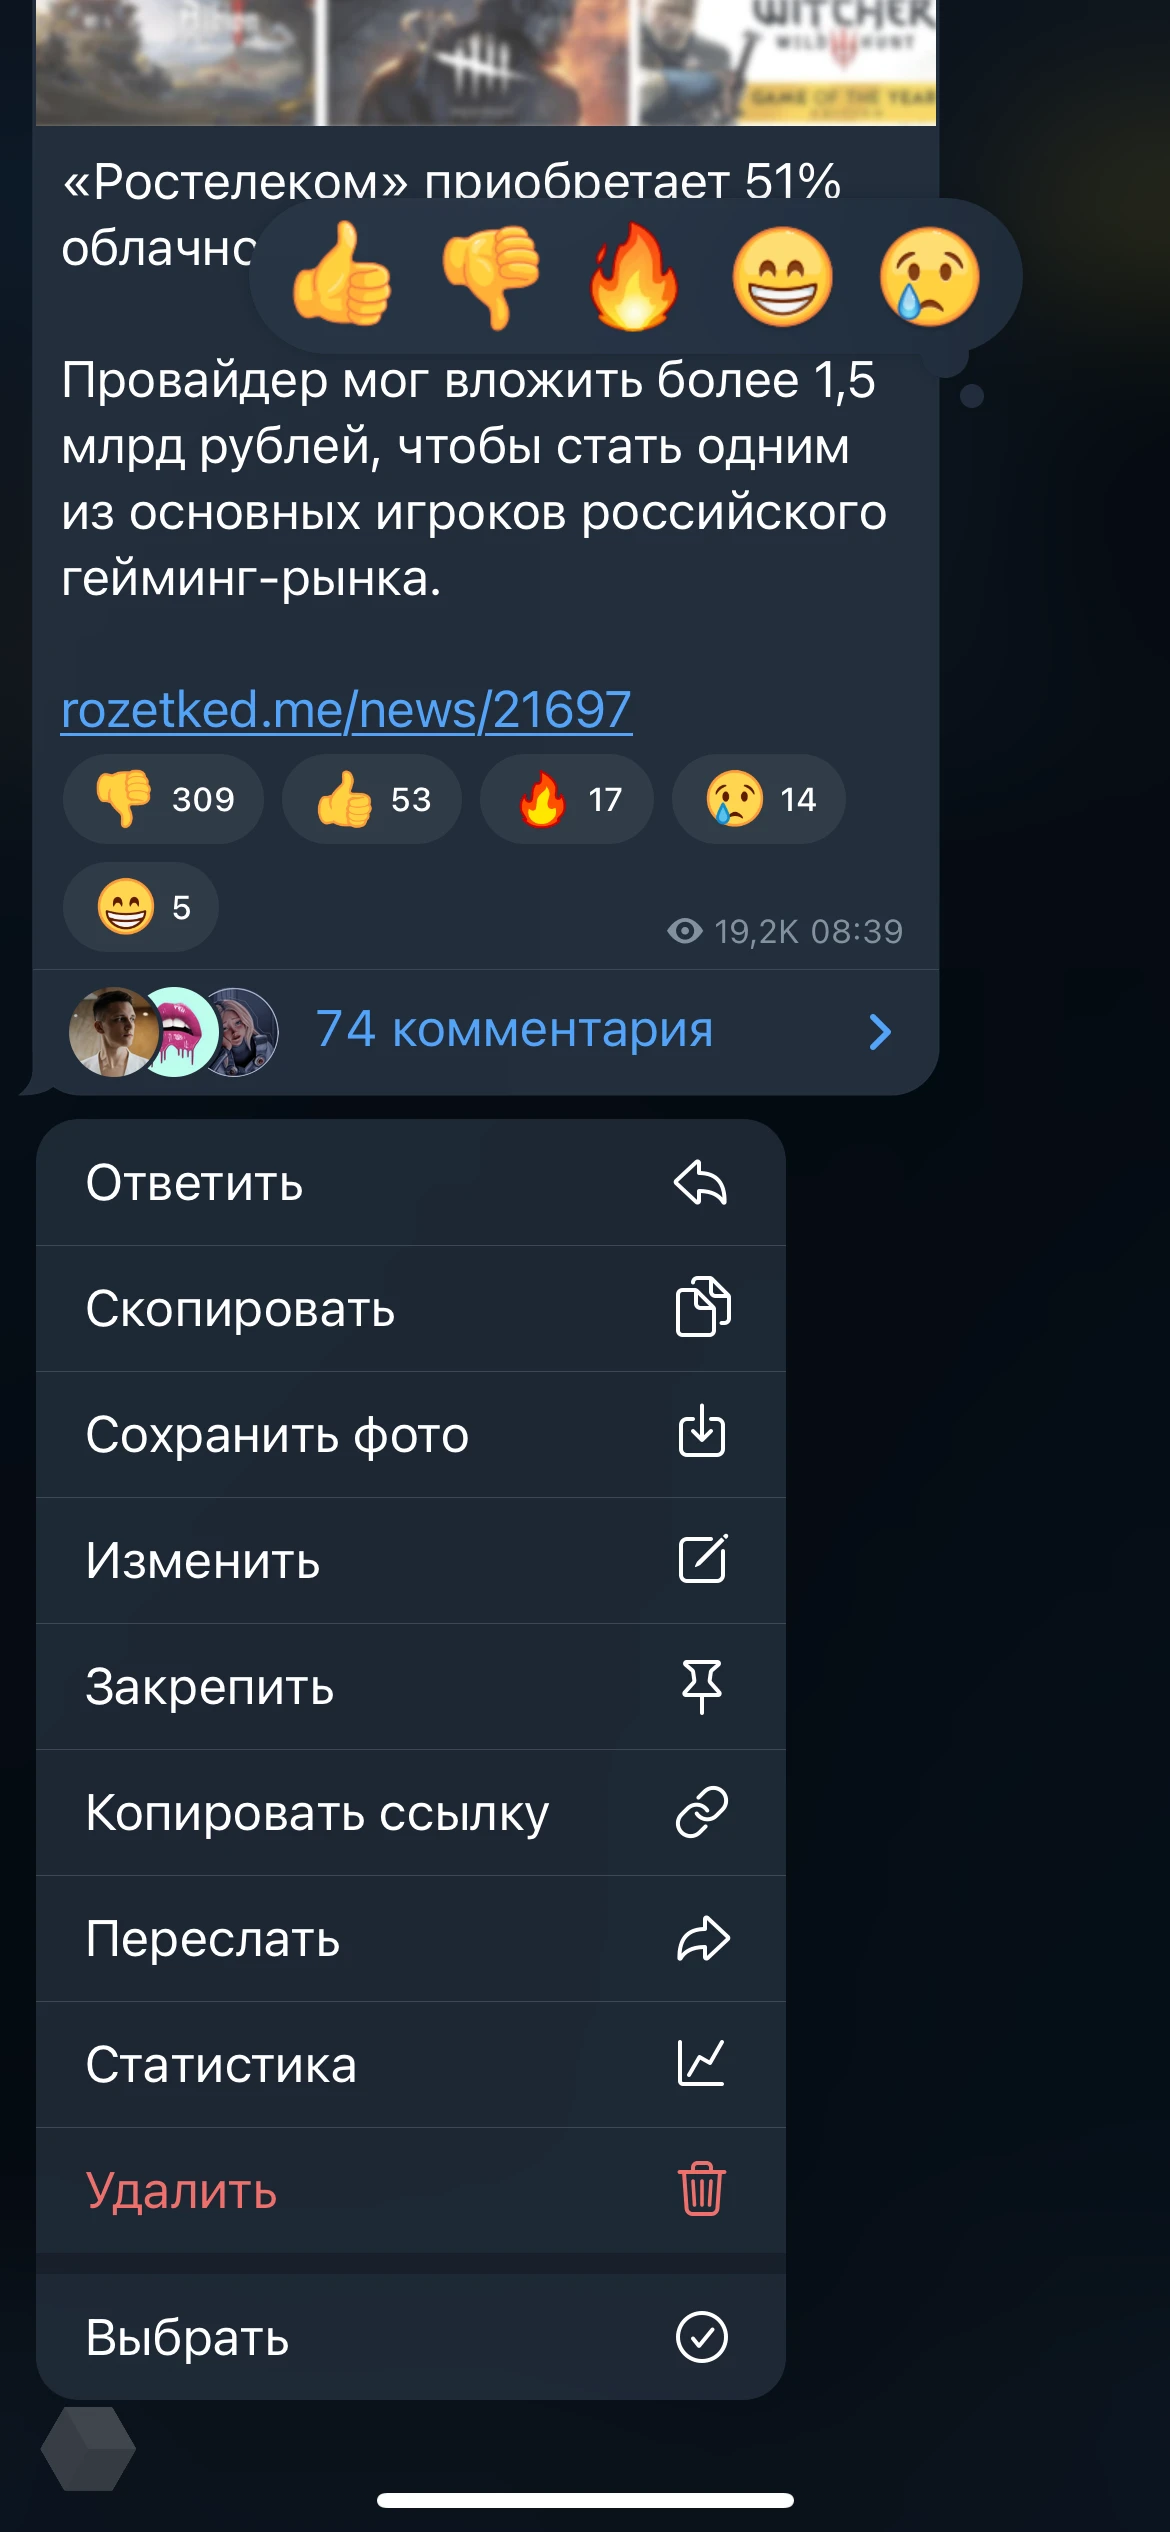 Как телеграмм перевести на русский язык в телефоне андроид фото 107